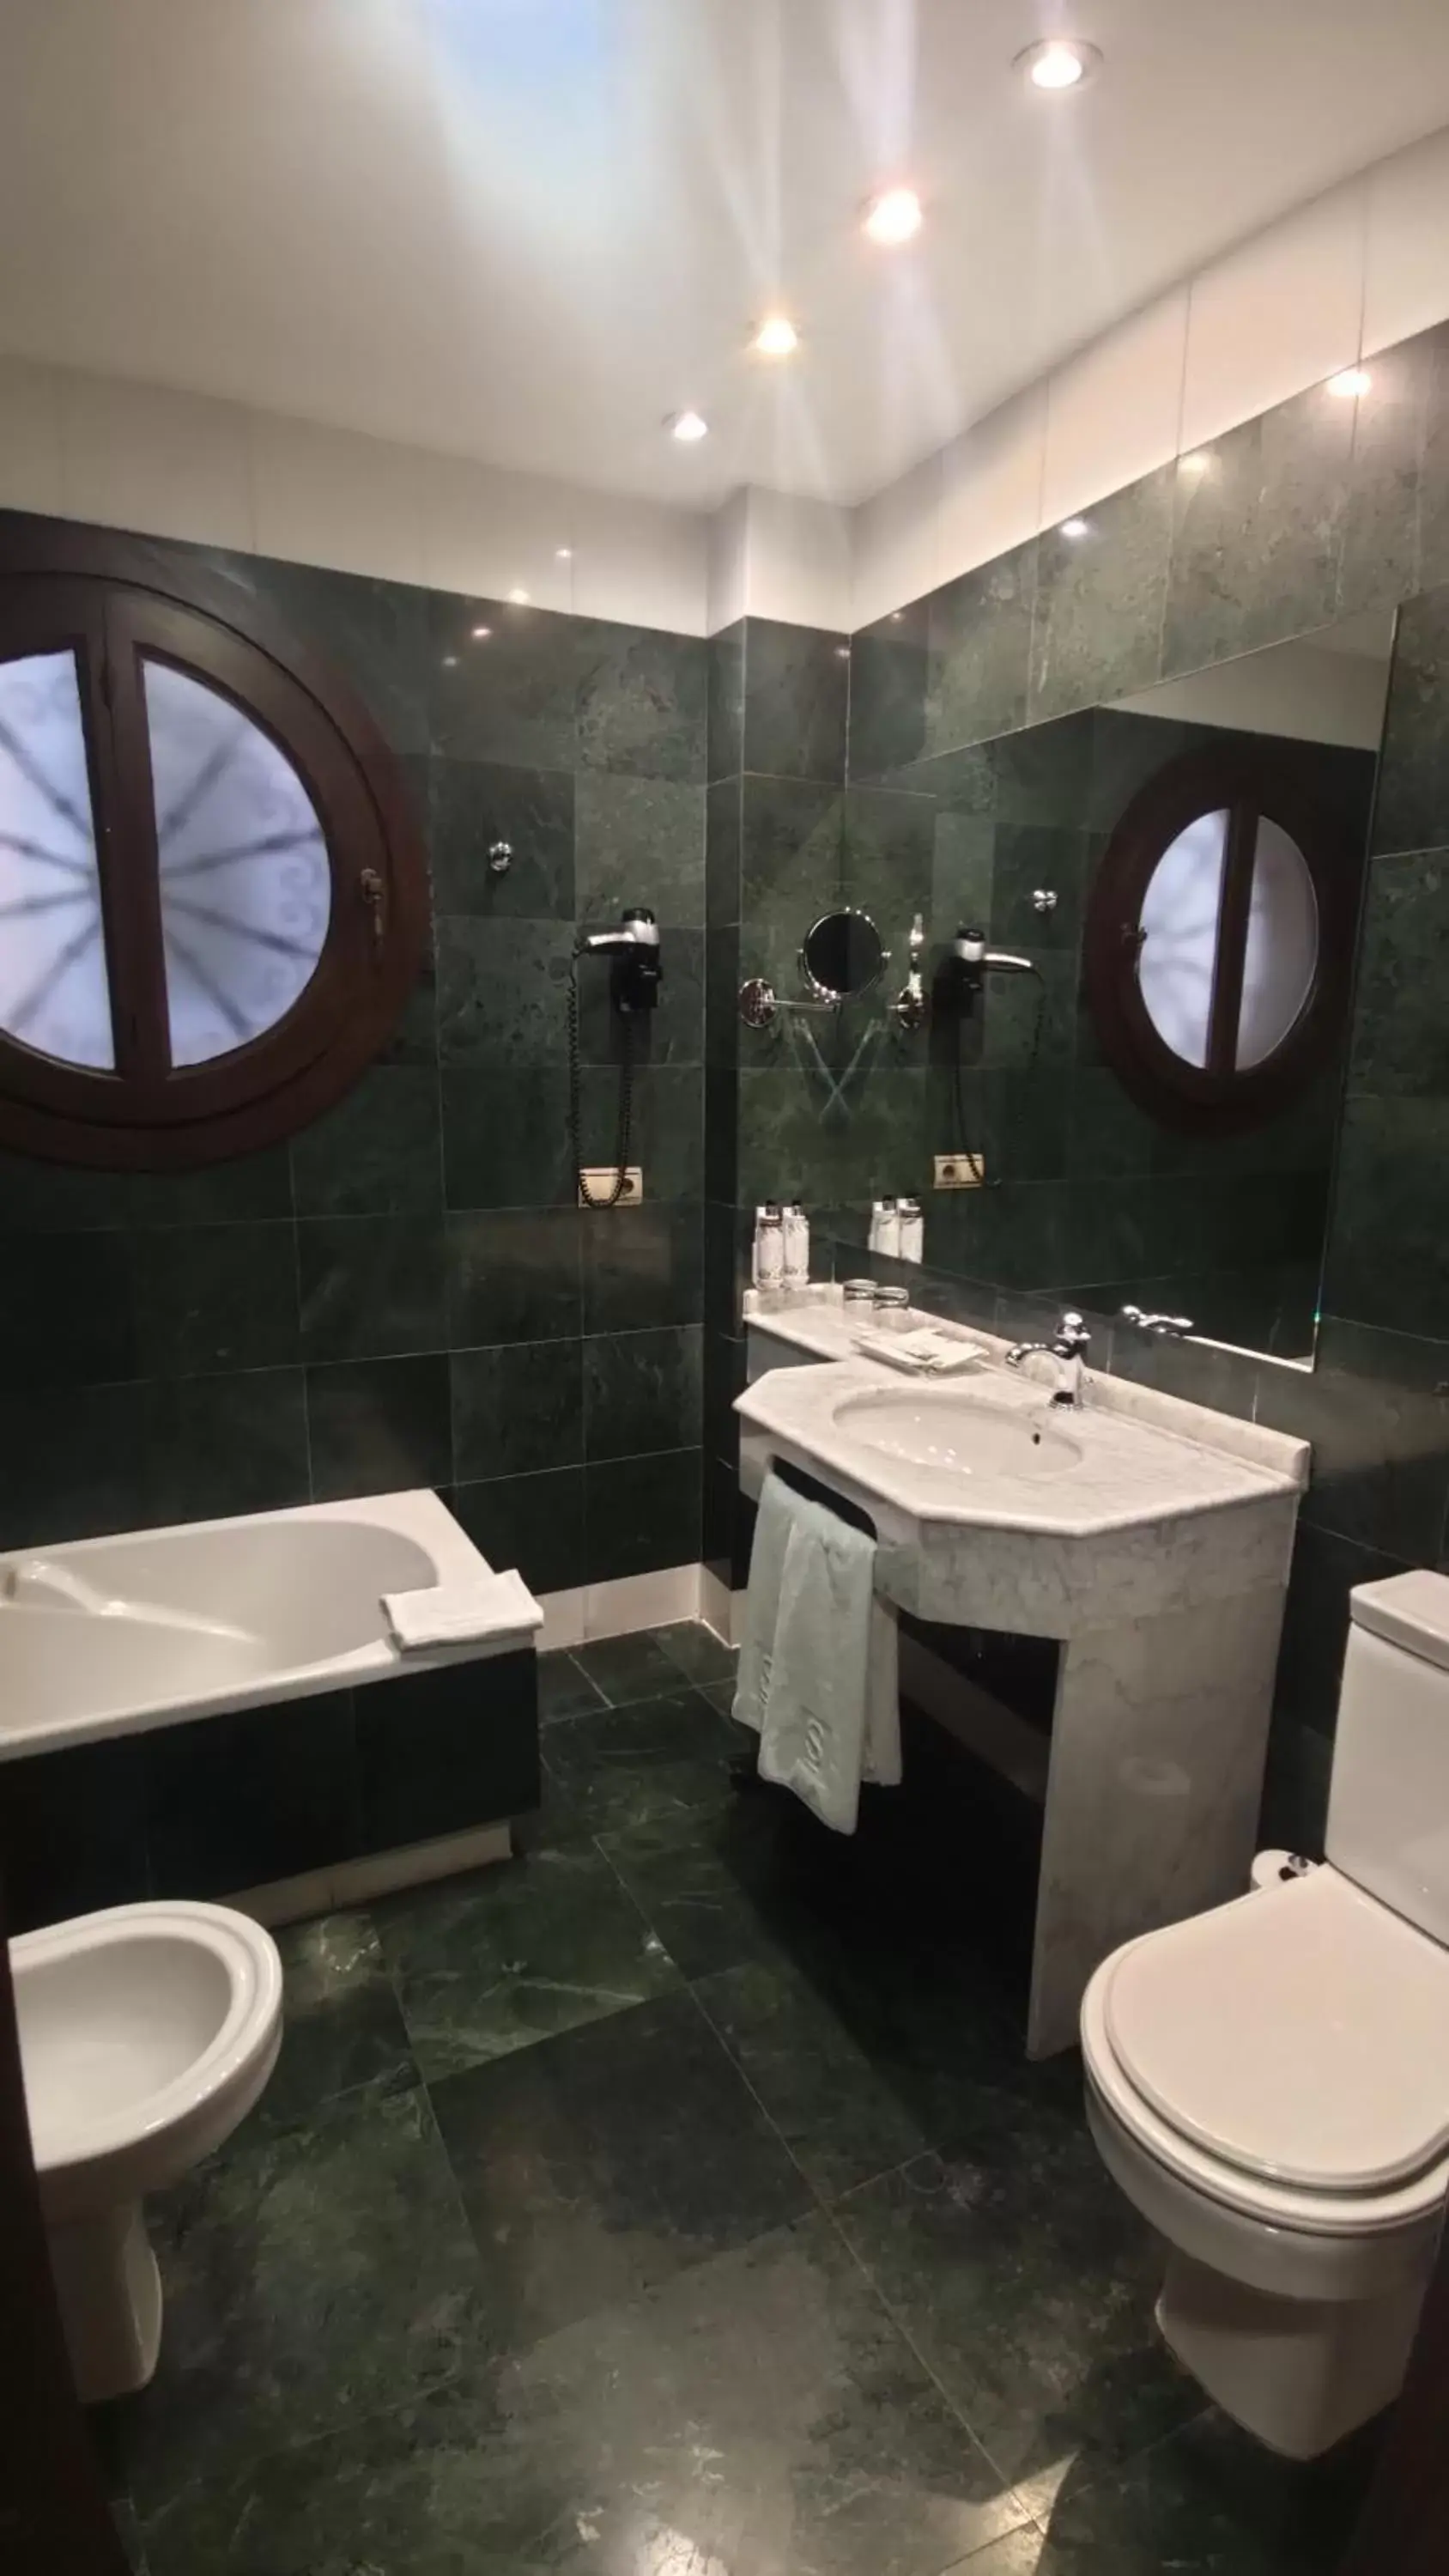 Bathroom in Sercotel Palacio de los Gamboa